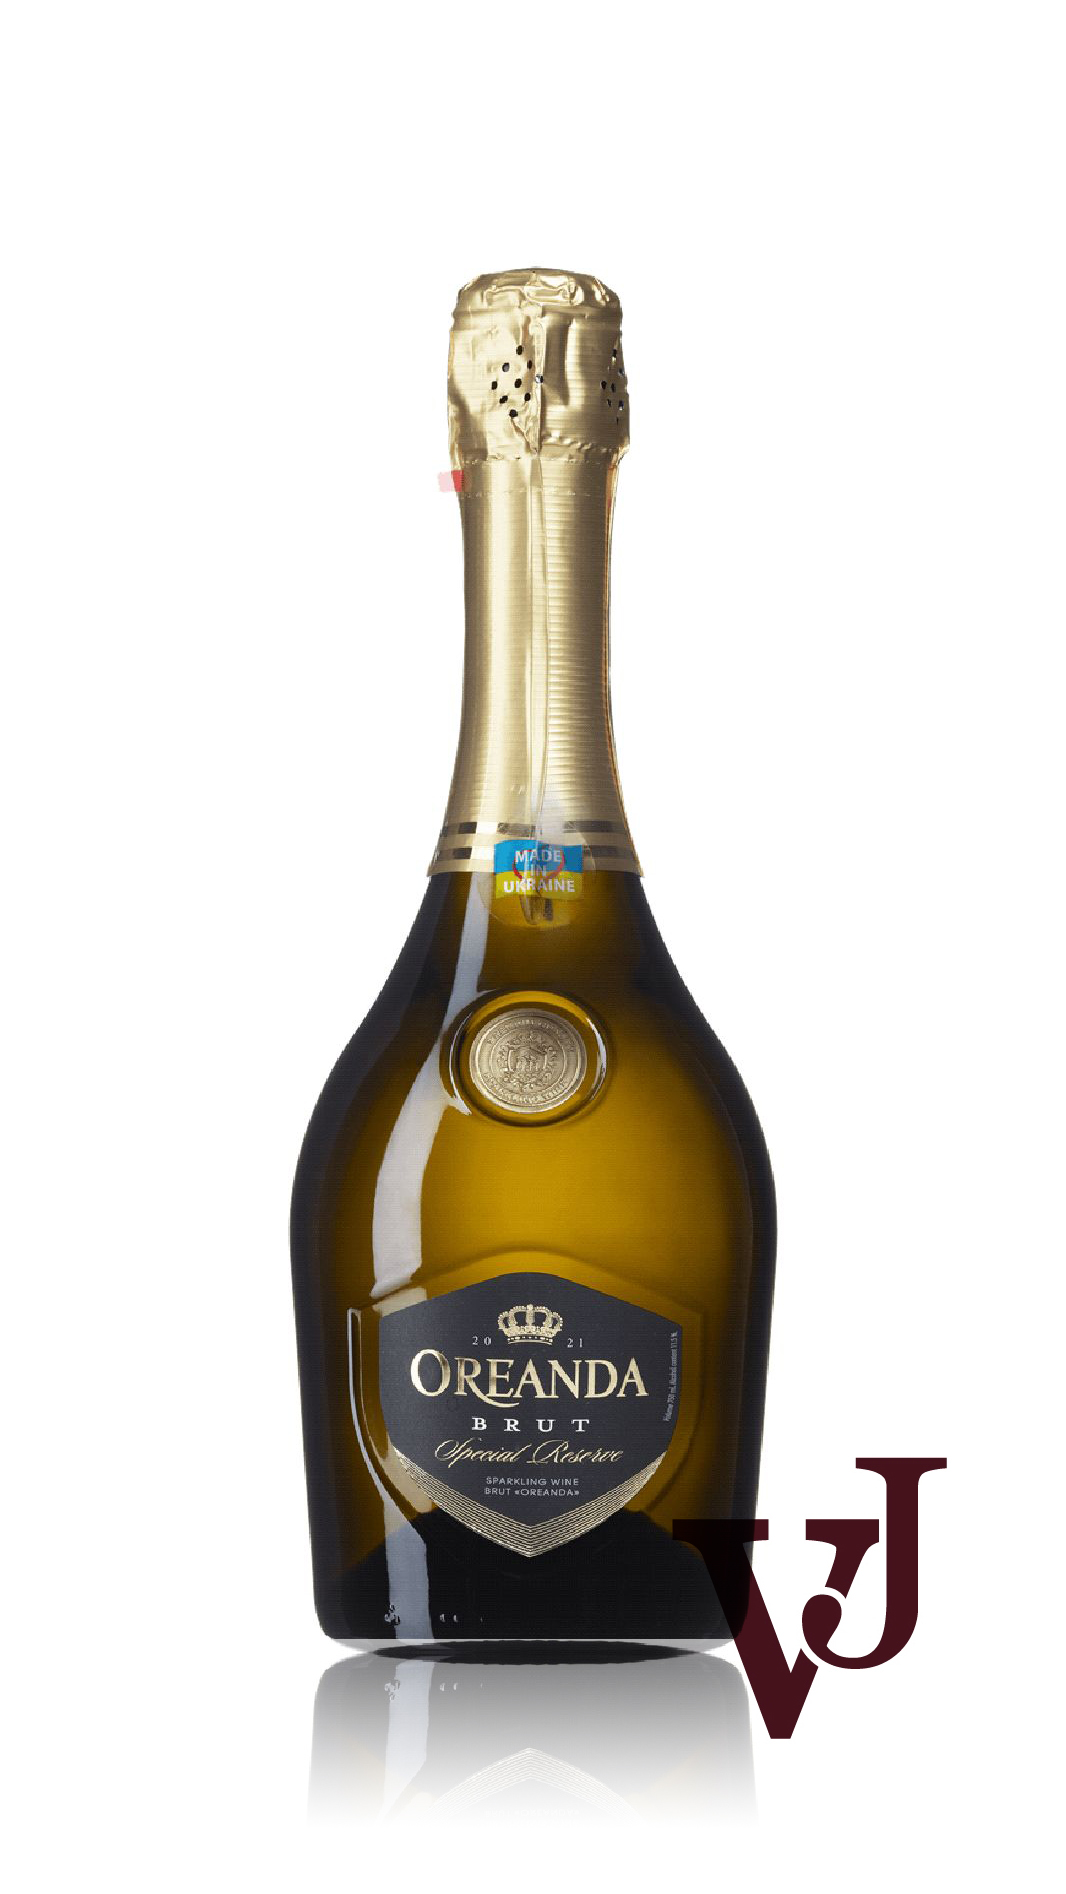 Mousserande Vin - Oreanda Premium Brut artikel nummer 5781101 från producenten Odesa Brandy Fabrik AB från Ukraina.